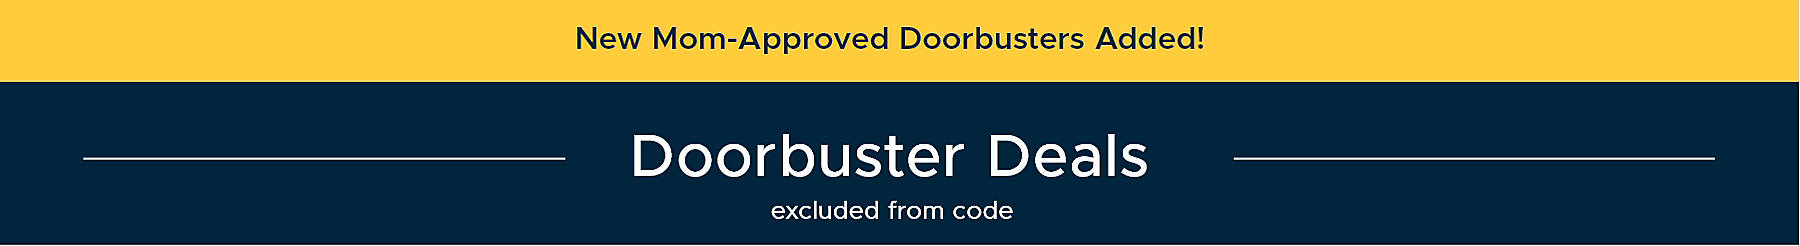 Doorbuster Deals excluded from code